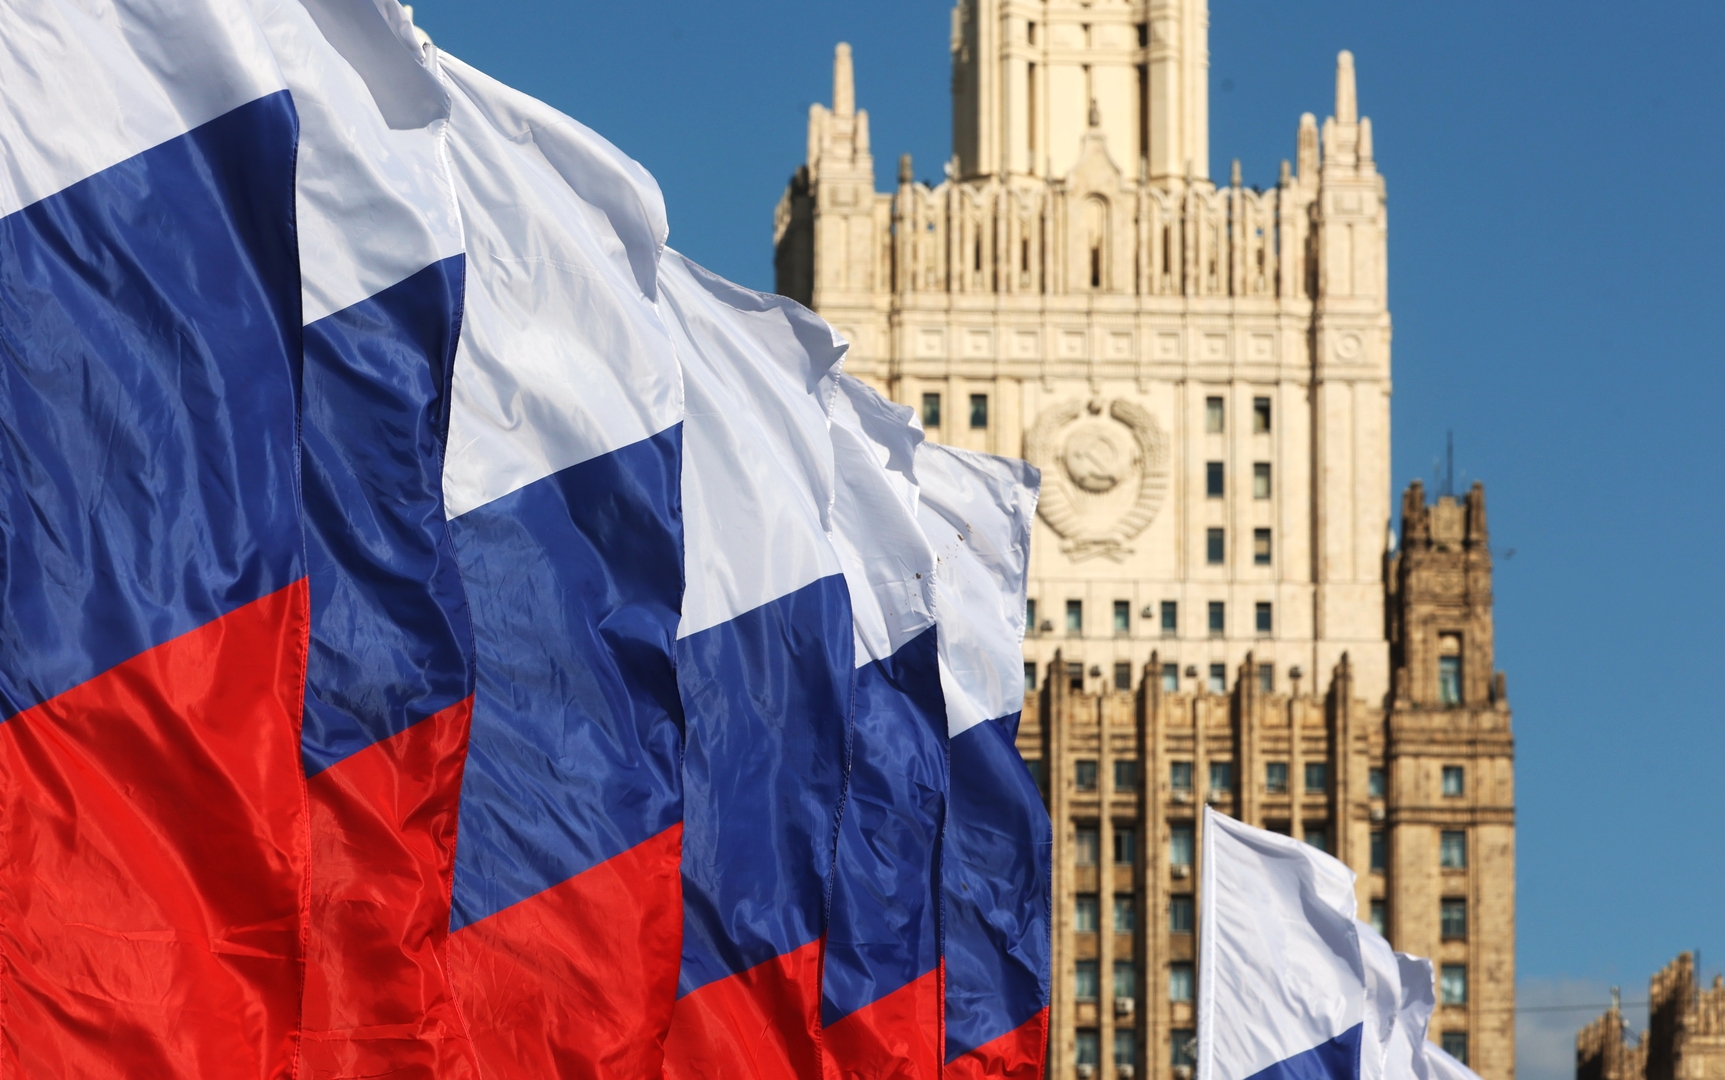 موسكو تدين الضربات الأمريكية لسوريا والعراق وتدعو لاجتماع عاجل لمجلس الأمن